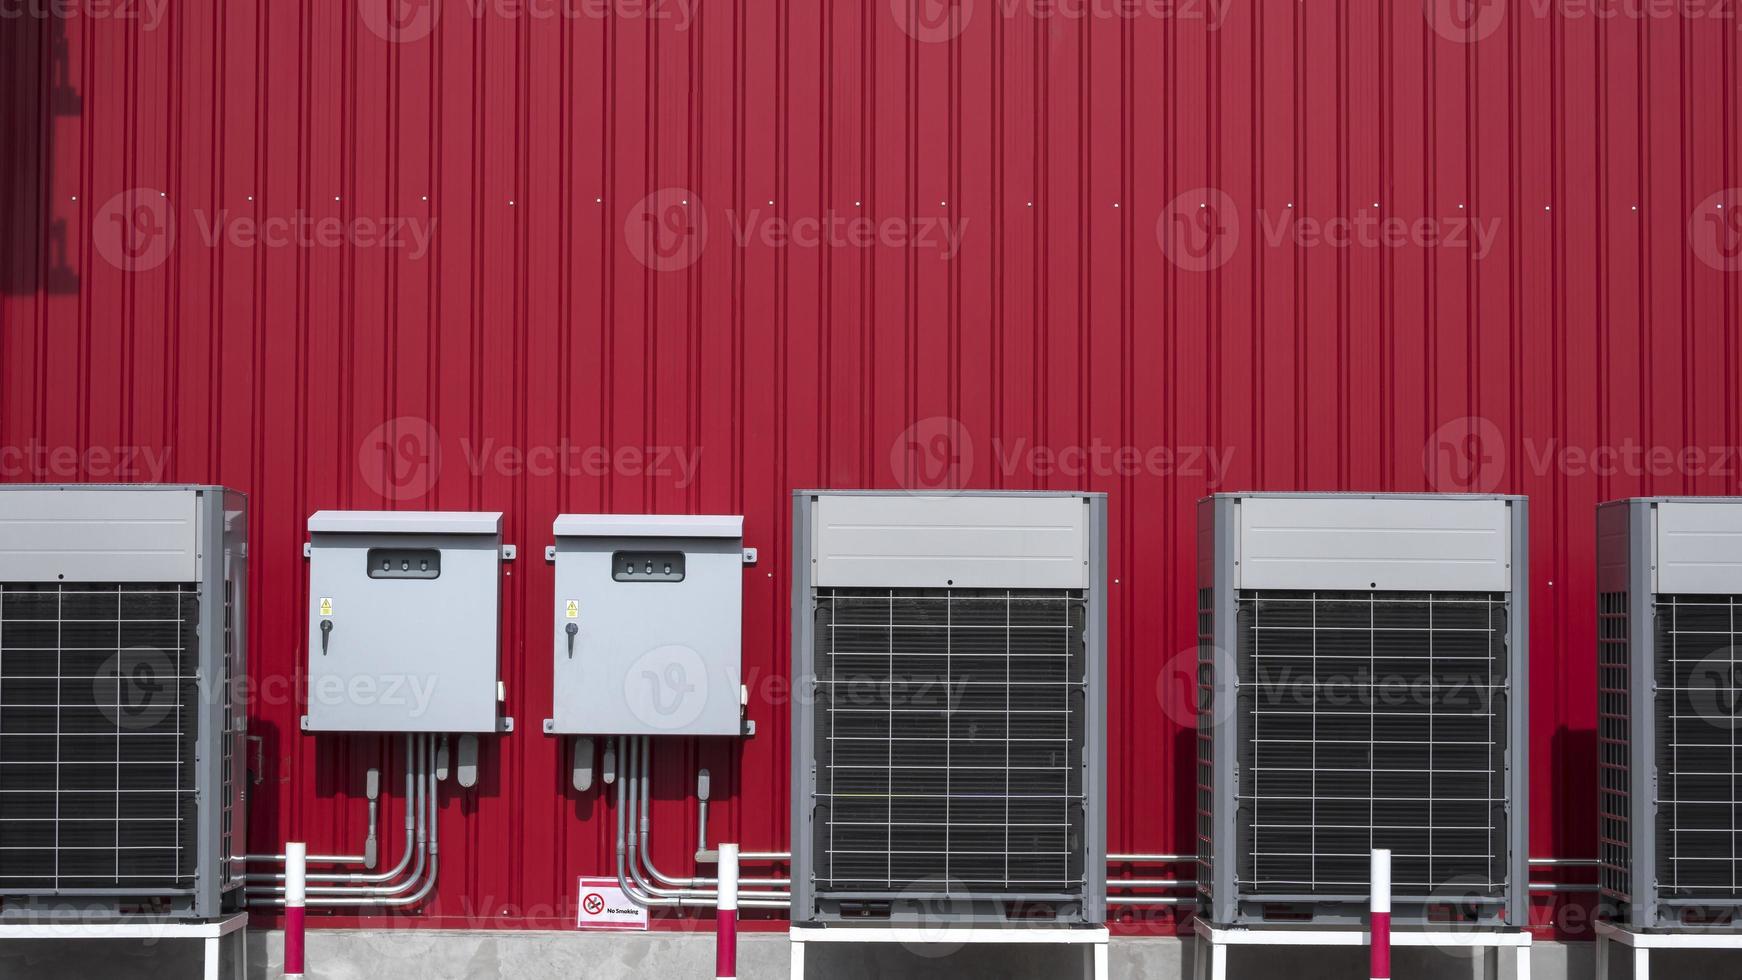 linha de compressores de ar condicionado com 2 armários de controle elétrico e sistema de tubulações elétricas na parede de chapa vermelha fora do edifício foto